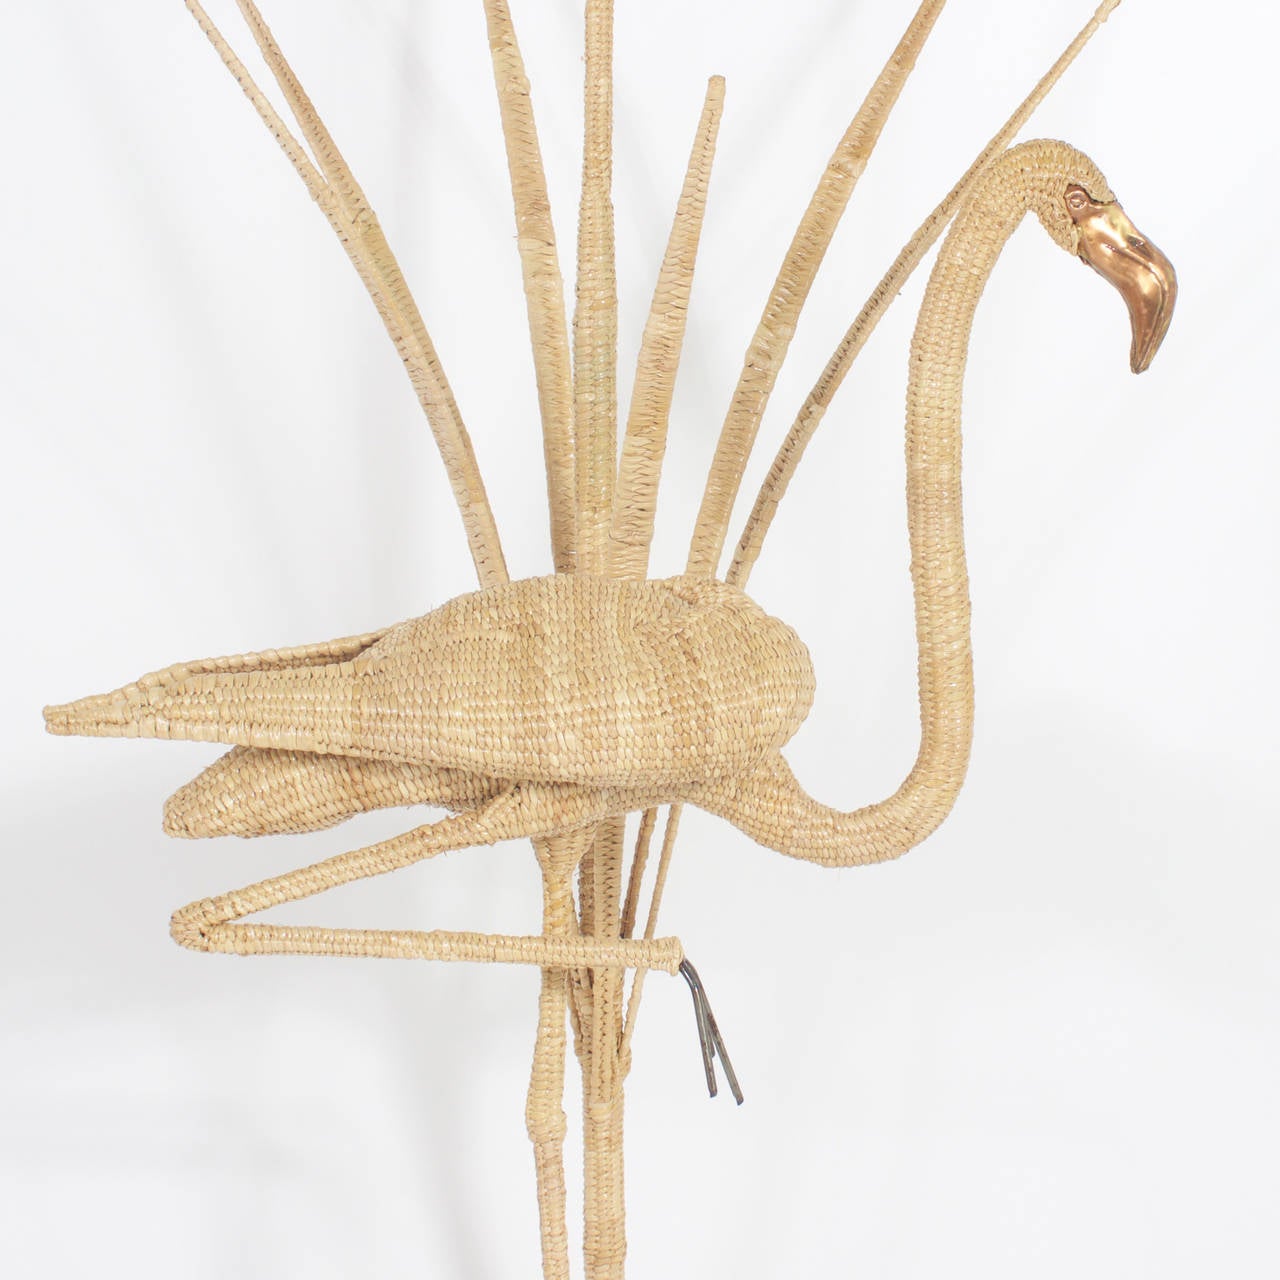 Le lampadaire Flamingo de Mario Torres prend la pose familière d'une jambe. Structure en métal enveloppée d'osier ou de roseau. Ils sont dotés de becs et d'yeux en laiton et se tiennent devant une parcelle de roseaux. Signé Mario Torres, EST. 1974